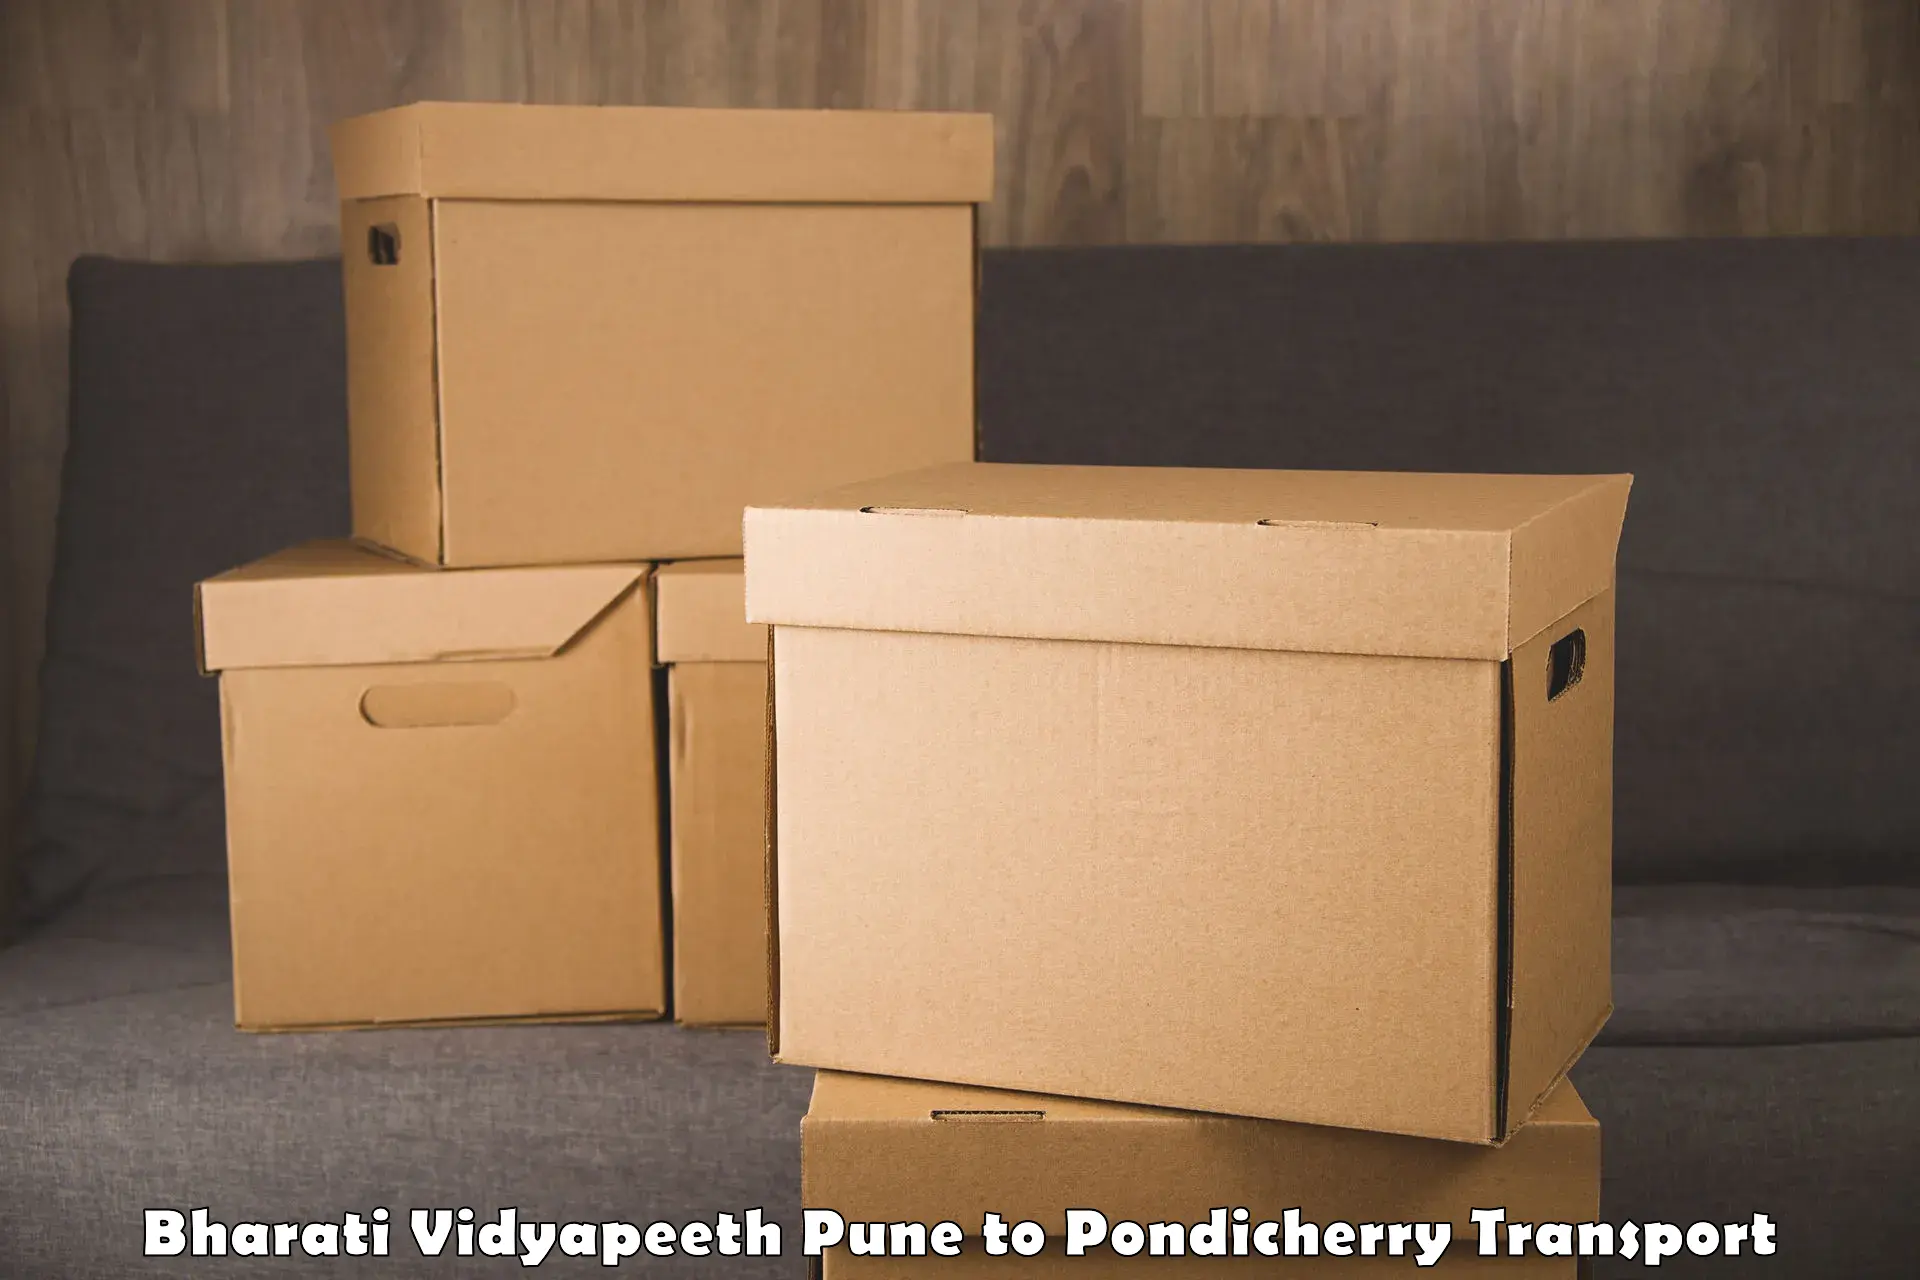 Truck transport companies in India Bharati Vidyapeeth Pune to Pondicherry